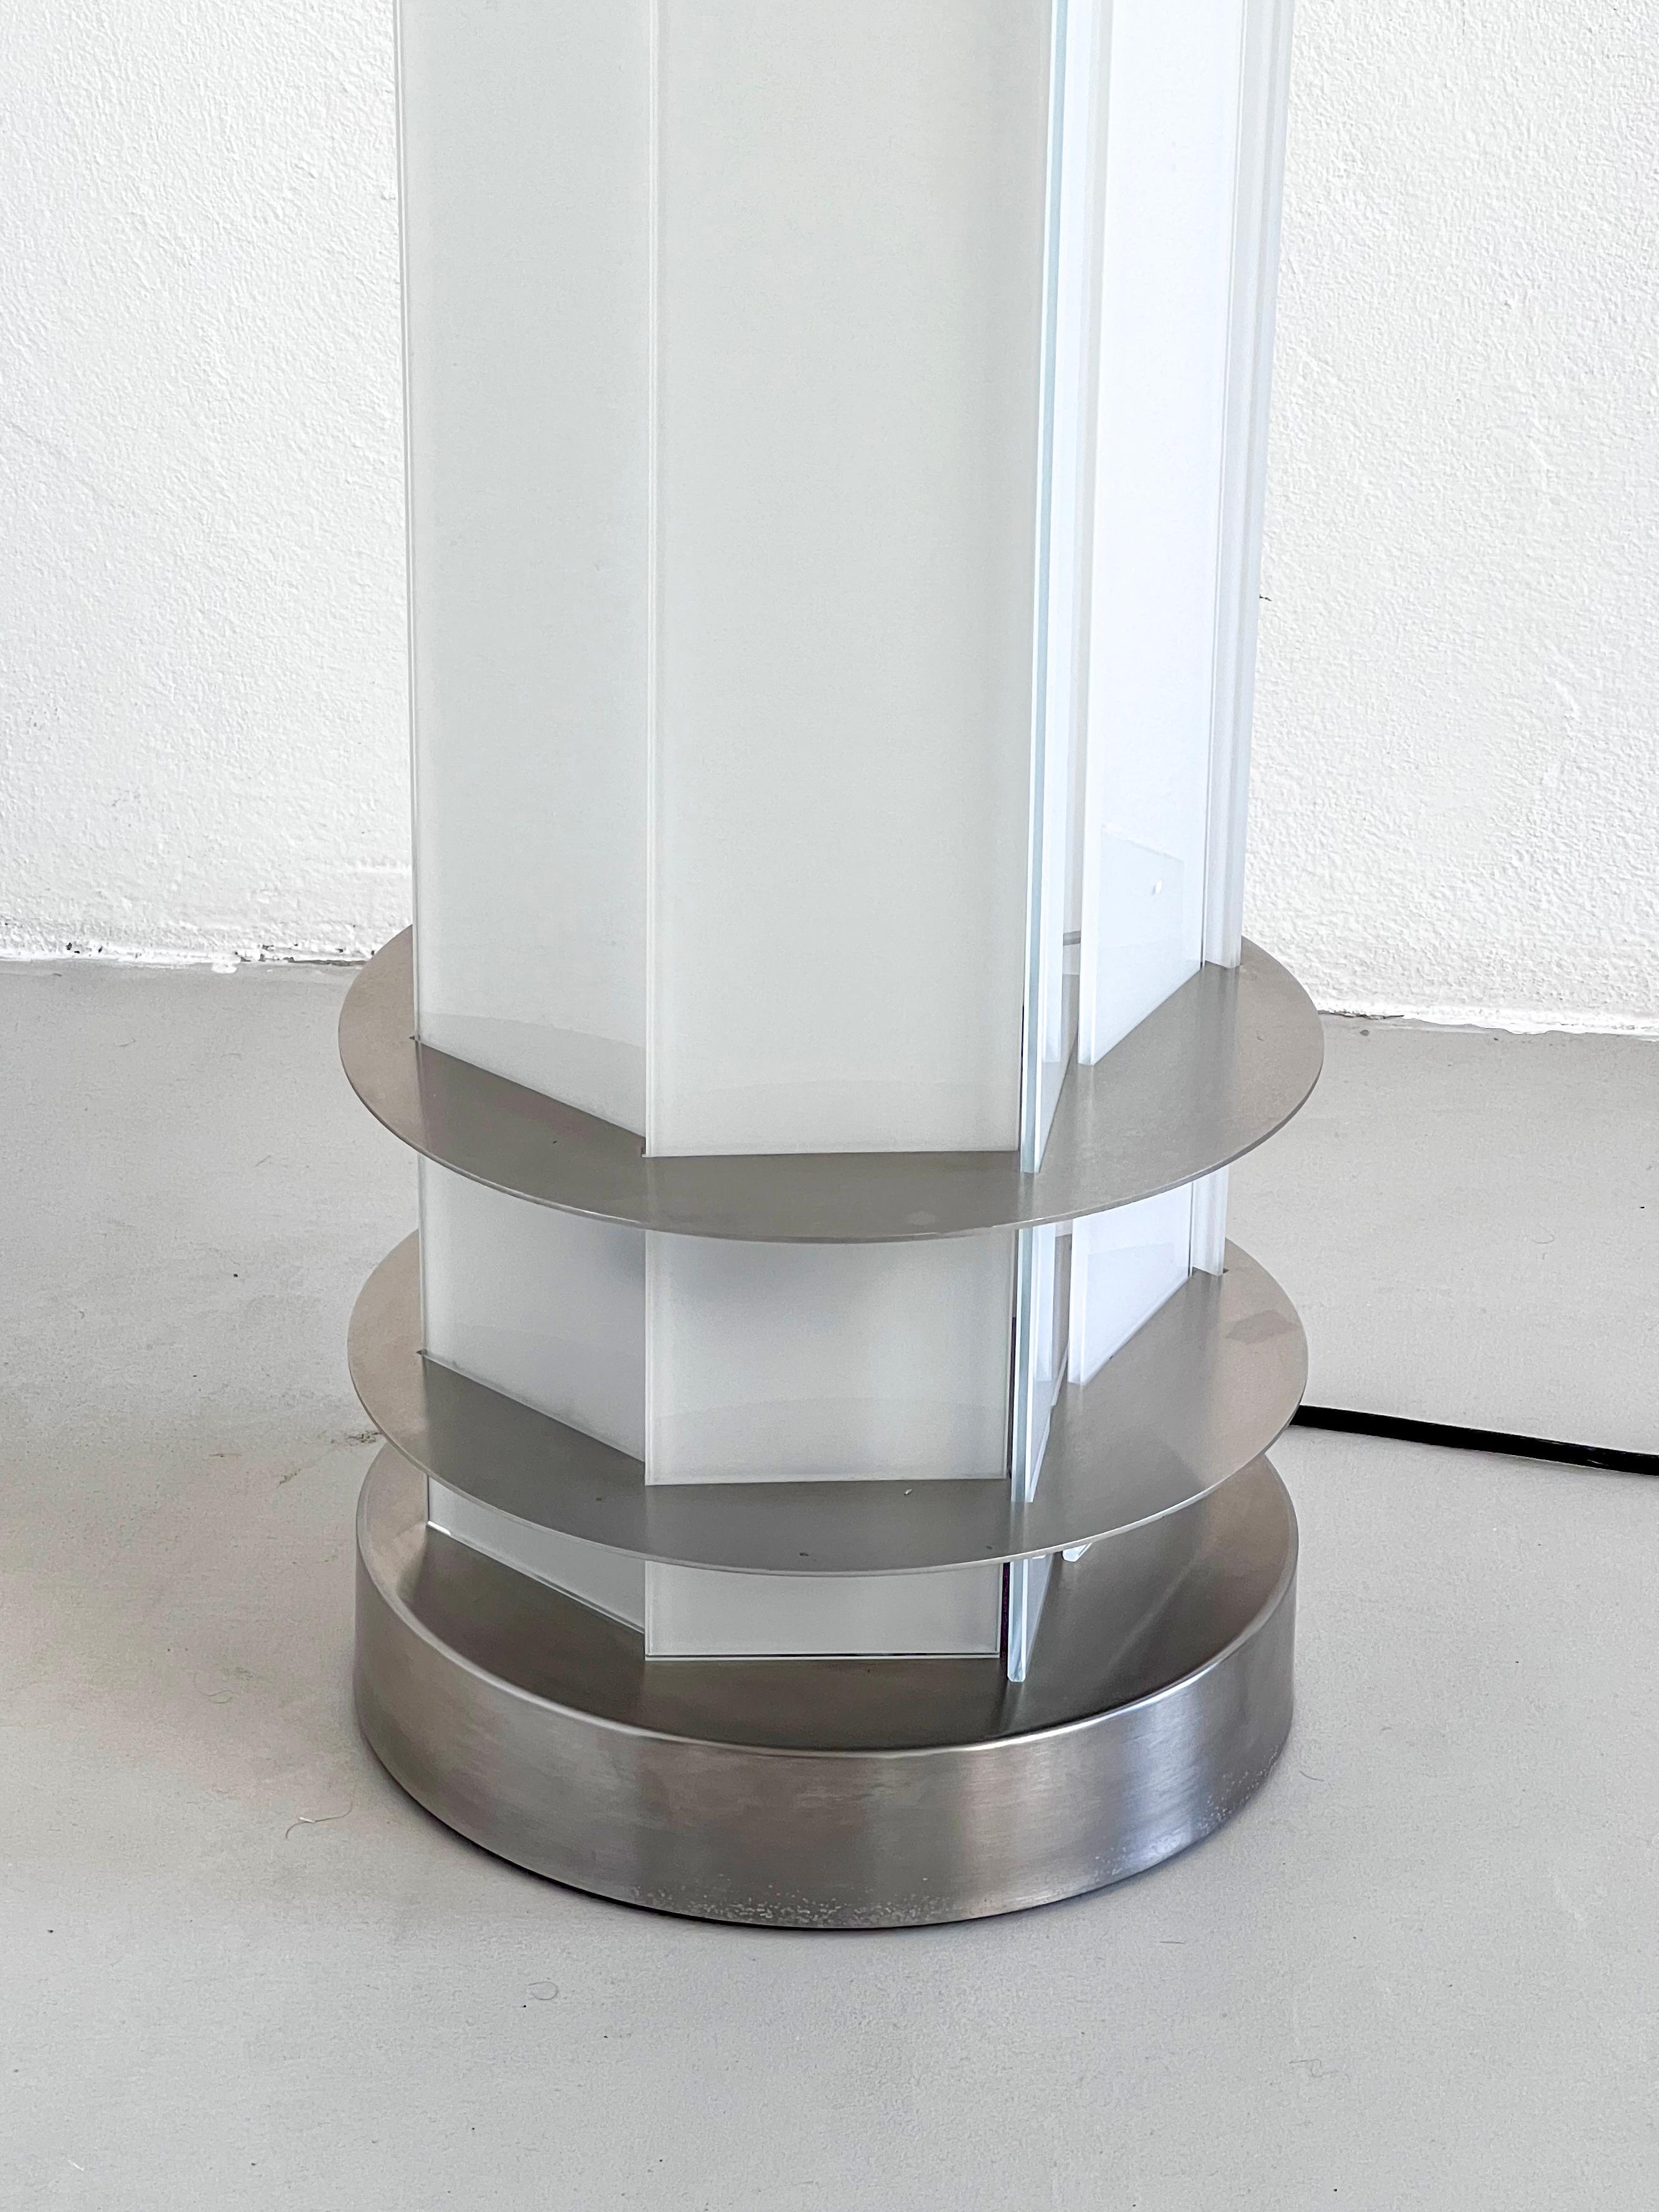 
Moderne und skulpturale italienische Stehlampe - Rare and Collectible lighting 

Die vorliegende Leuchte, die in den 2000er Jahren vom italienischen Designer Matteo Nunziati entworfen wurde, ist von den geraden, vertikalen Linien des Burj Khalifa